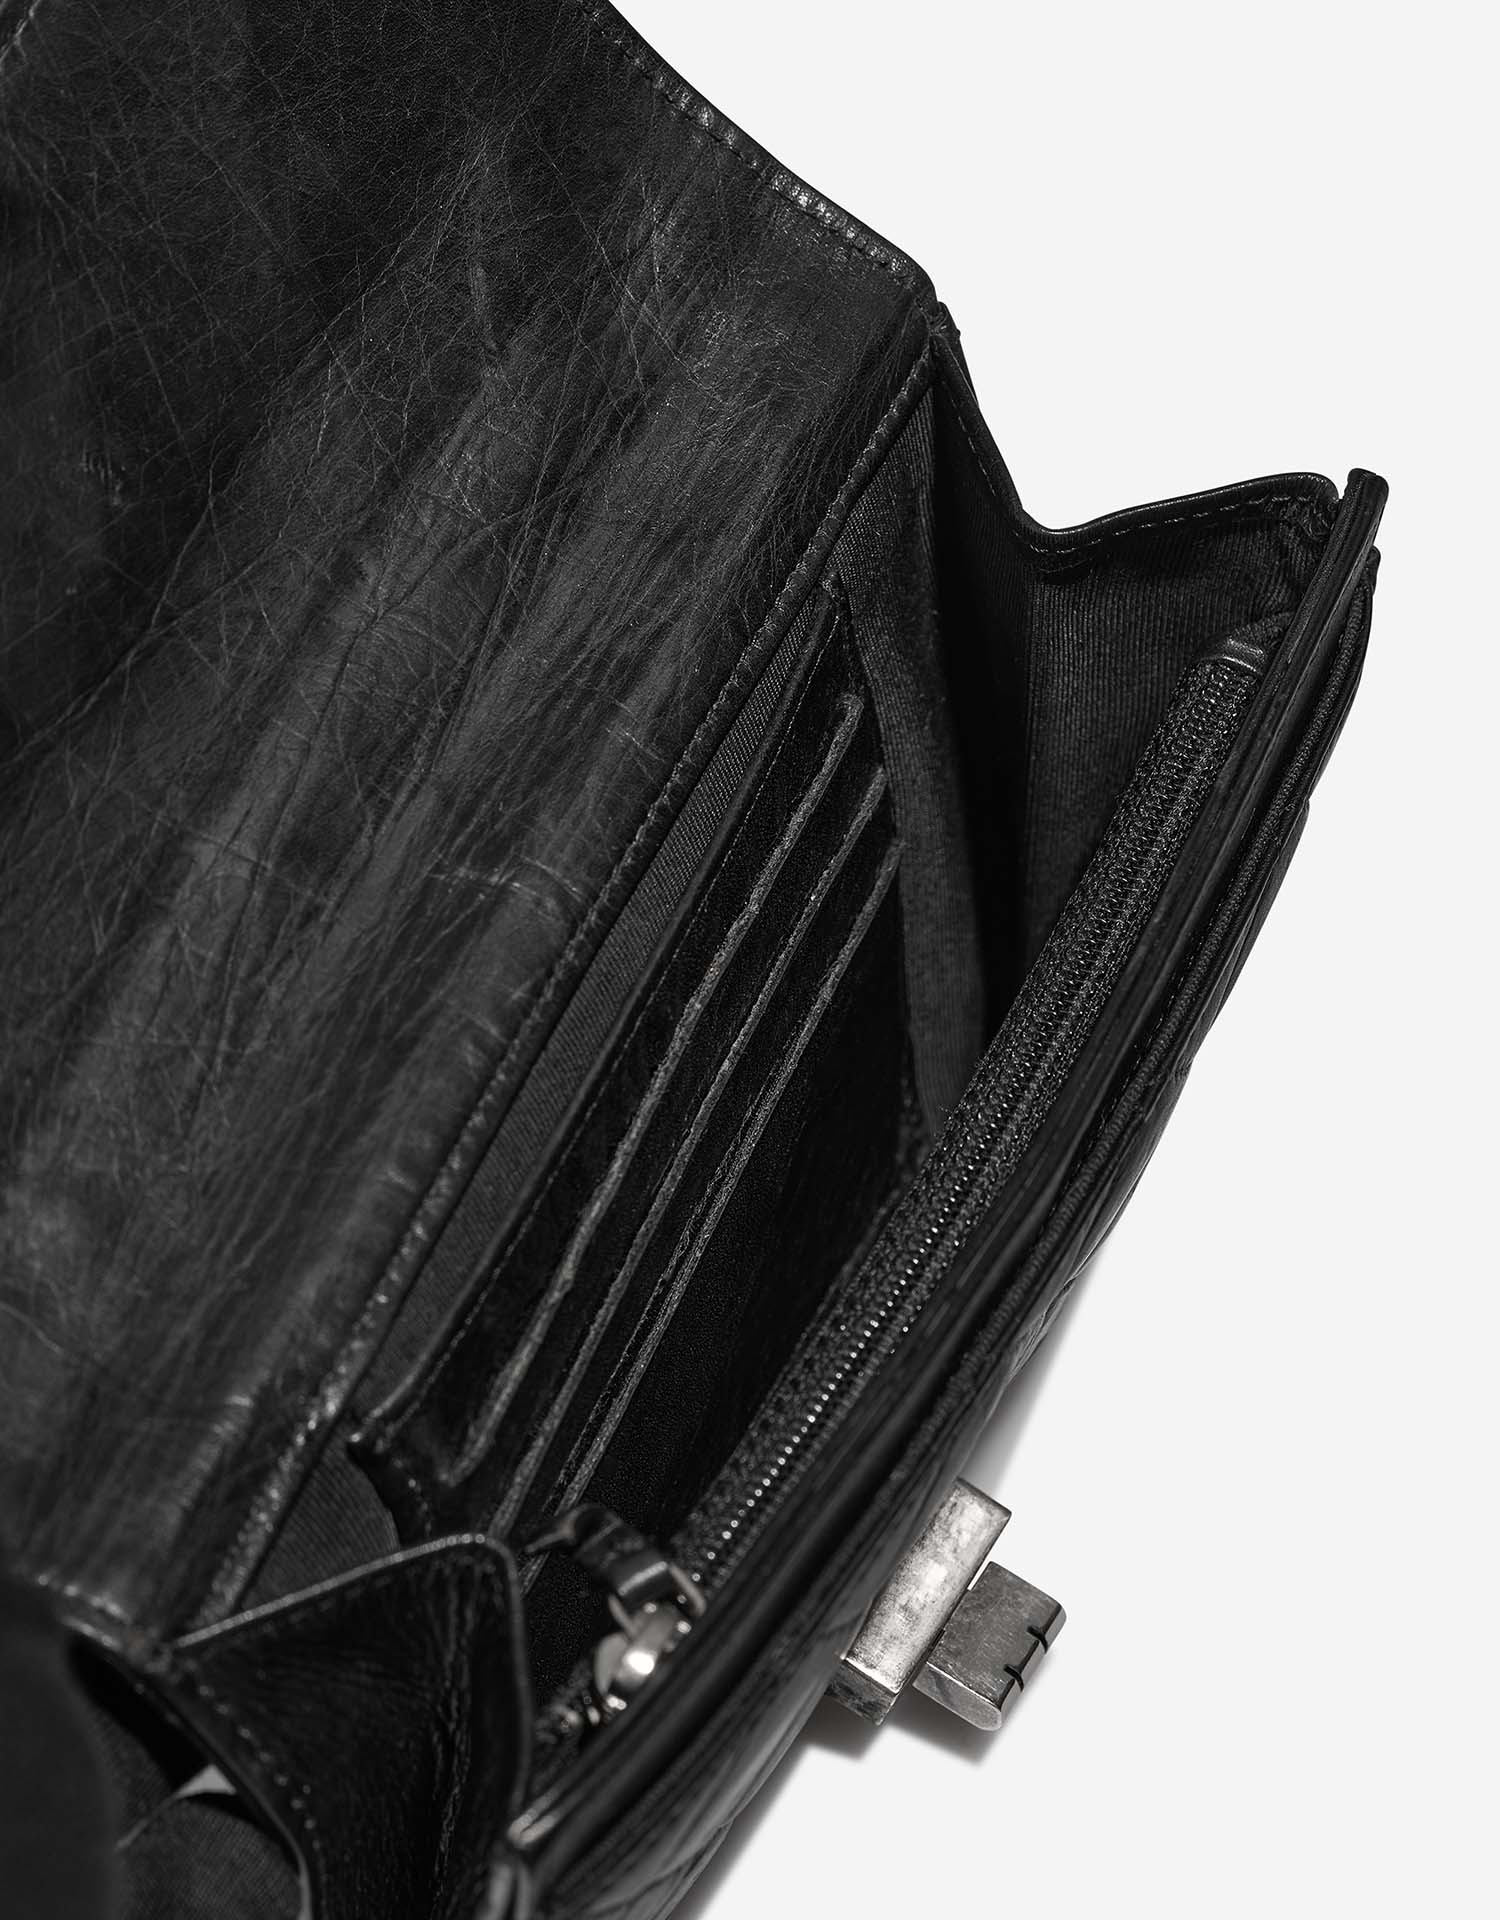 Chanel 255 226 Black Inside | Verkaufen Sie Ihre Designer-Tasche auf Saclab.com